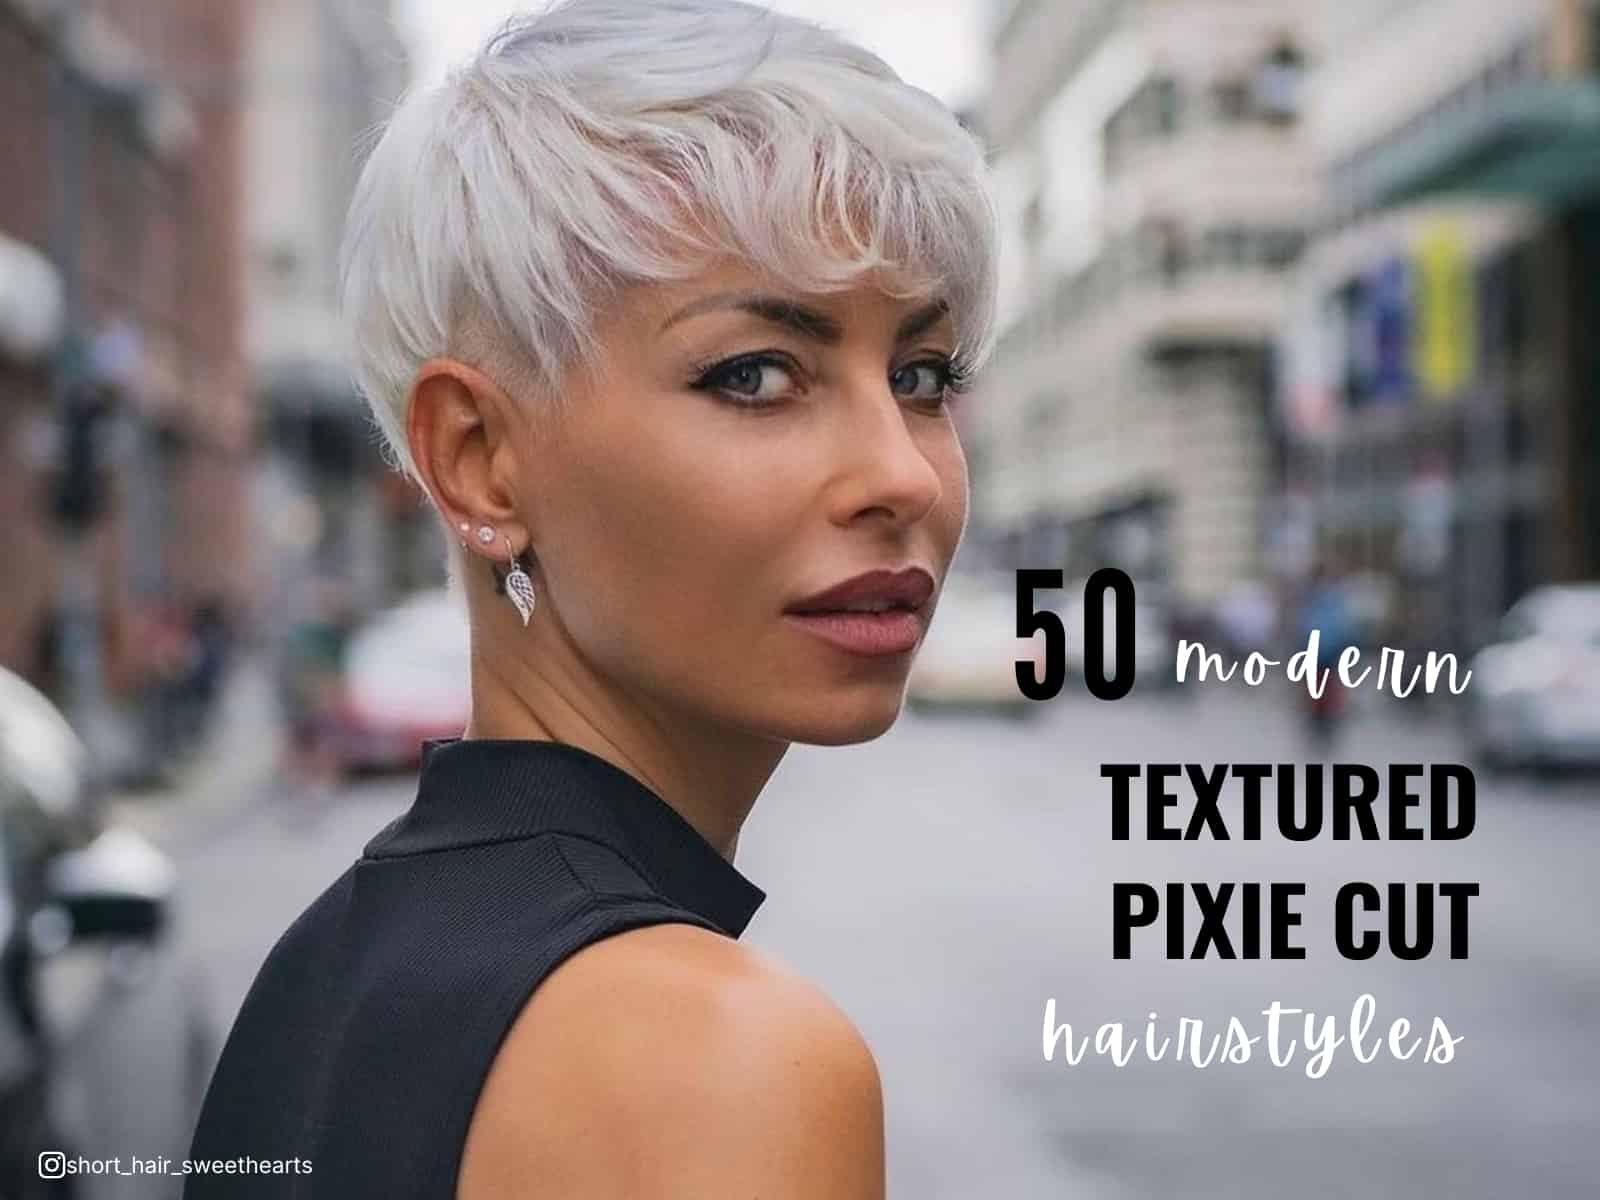 50 Penteados modernos com textura e corte pixie